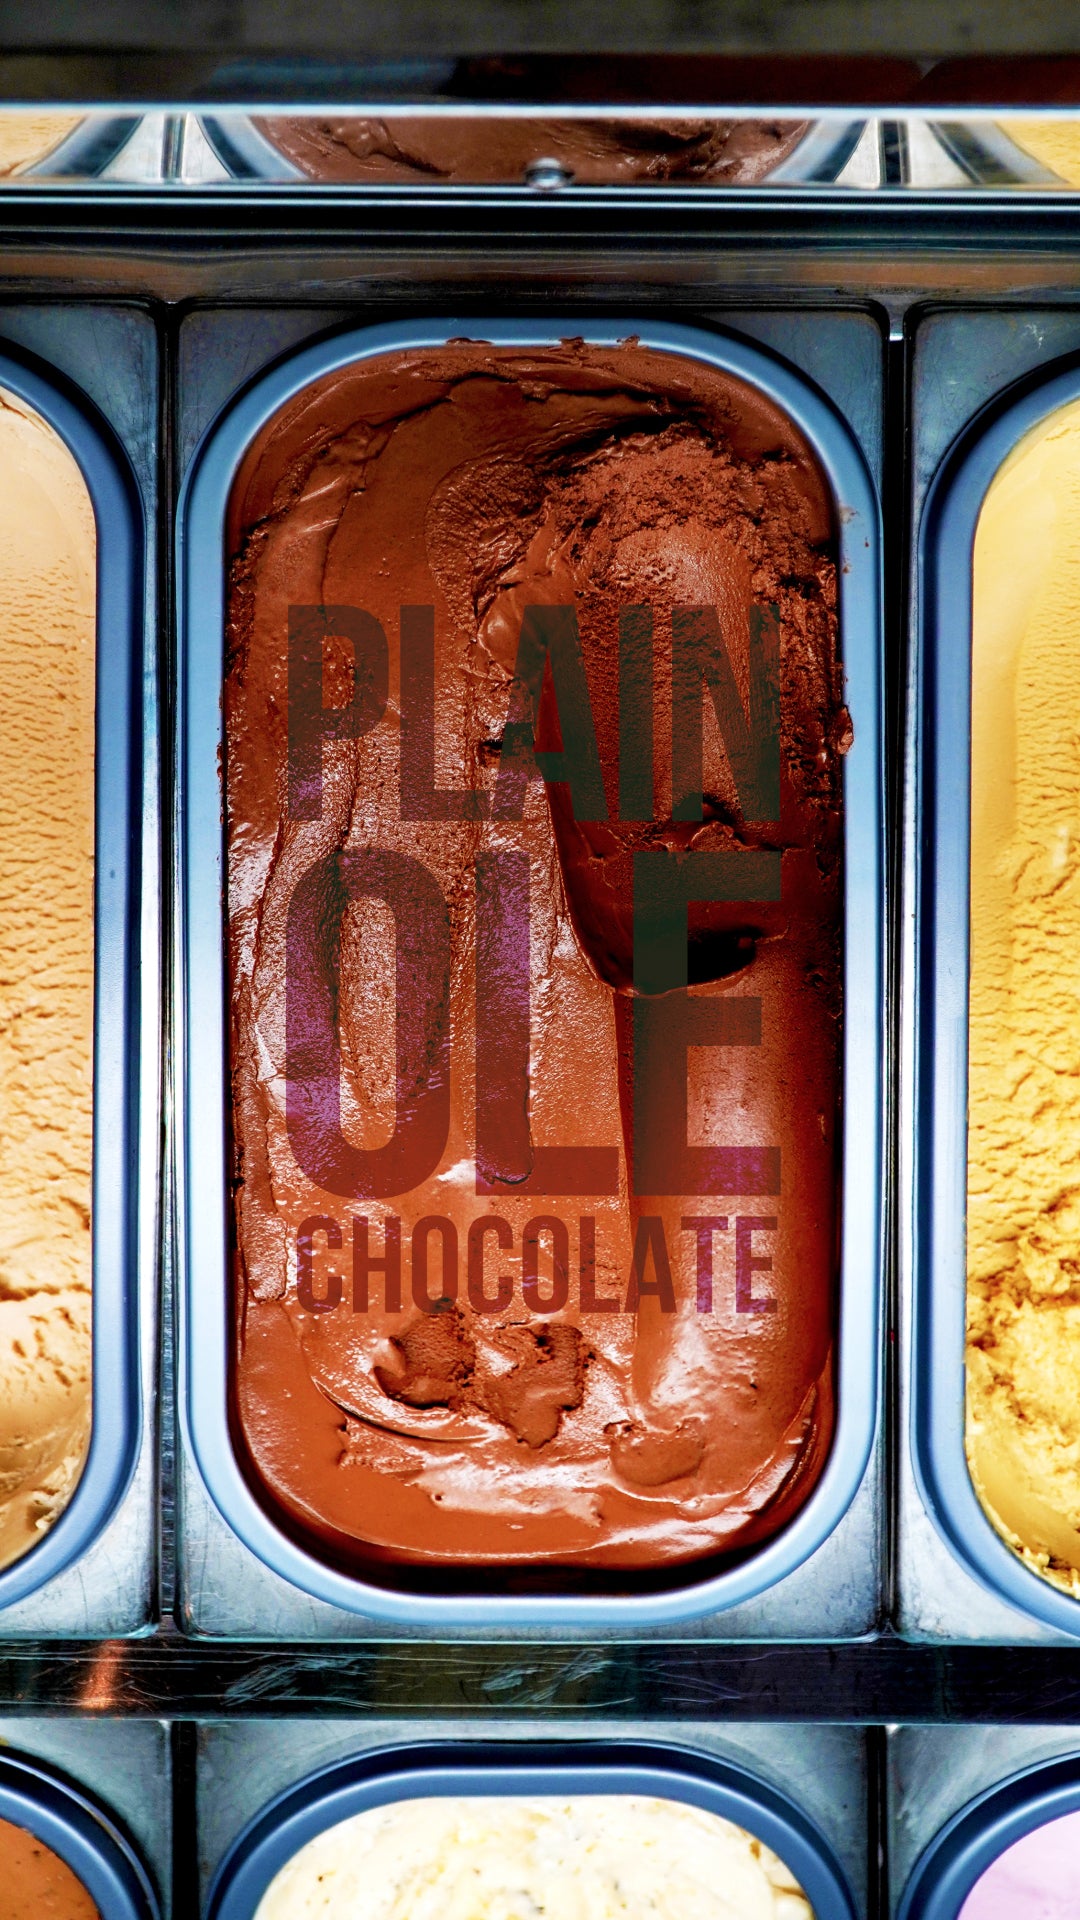 Plain Ole Chocolate